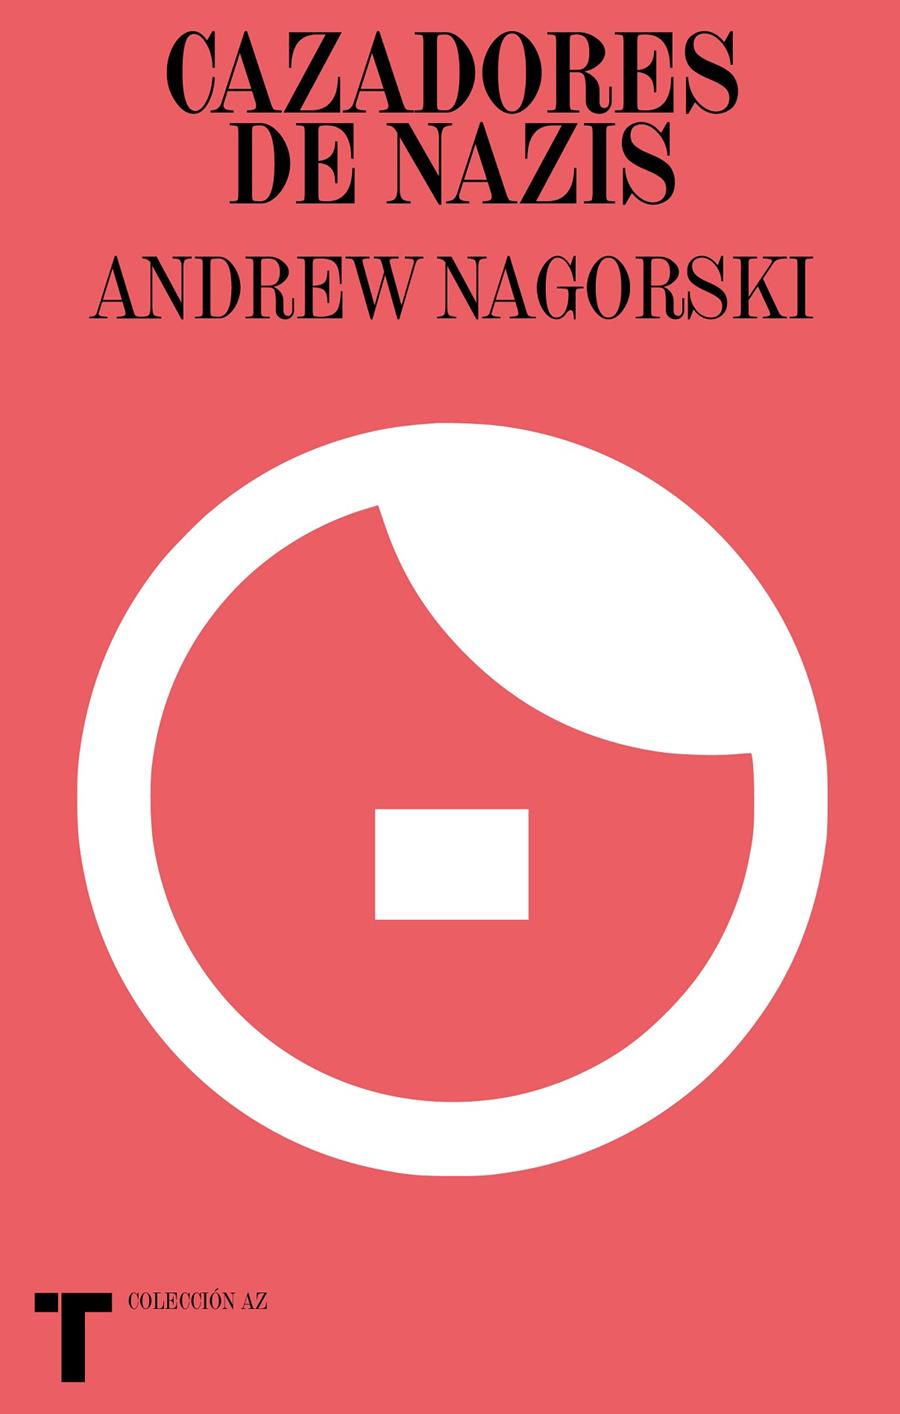 Cazadores de nazis | Nagorski, Andrew | Cooperativa autogestionària